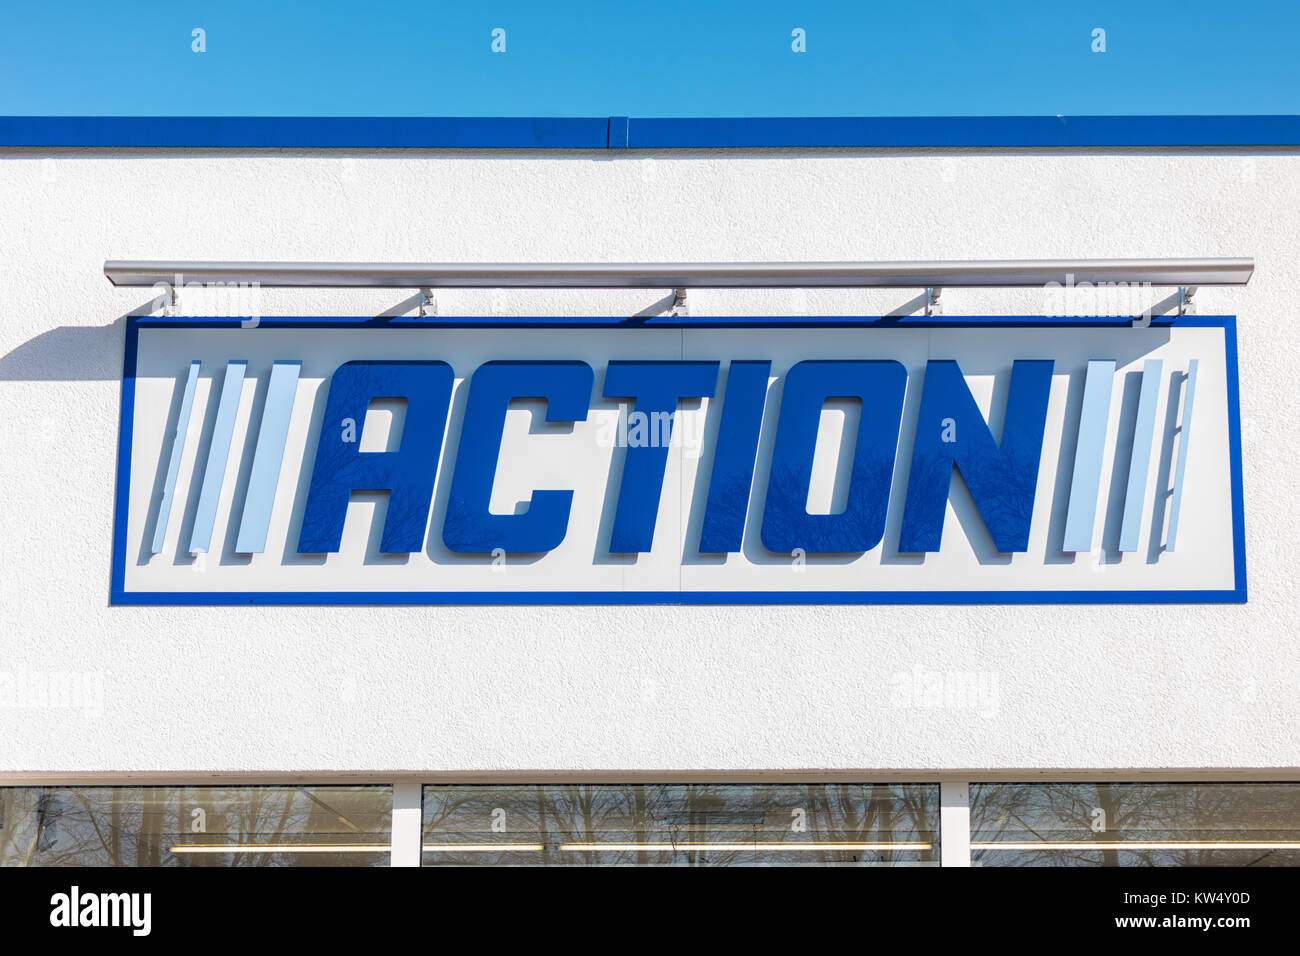 Logo des ACTION Store. ACTION ist ein internationaler Non-Food-Discounter mit über 35.000 Mitarbeitern und mehr als 850 Filialen in den Niederlanden und Belgien Stockfoto